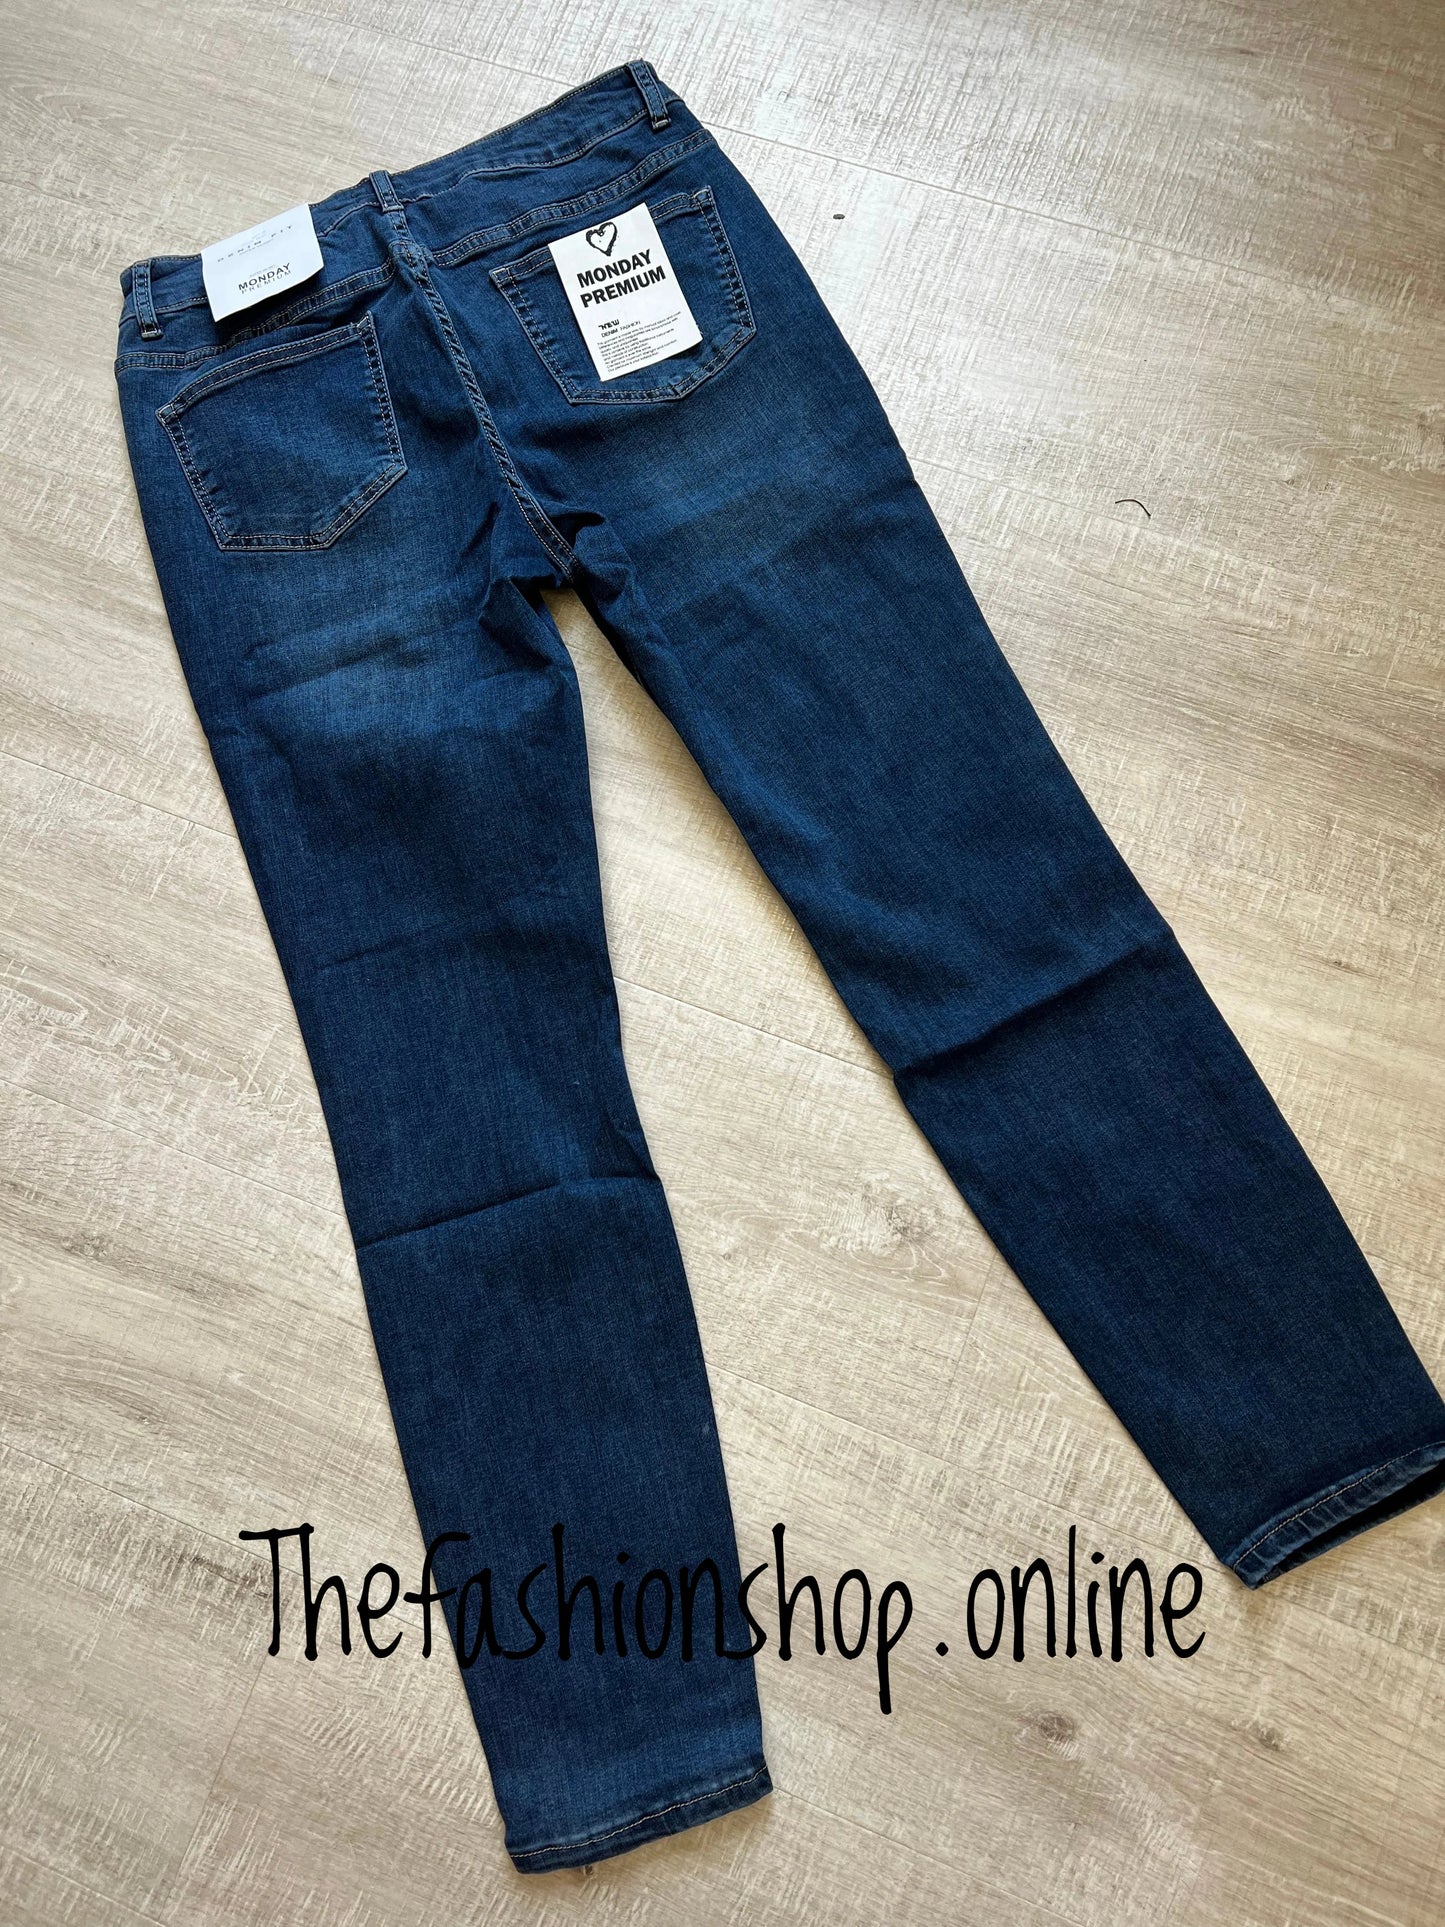 Premium dark denim ladies fit jeans sizes 10-20